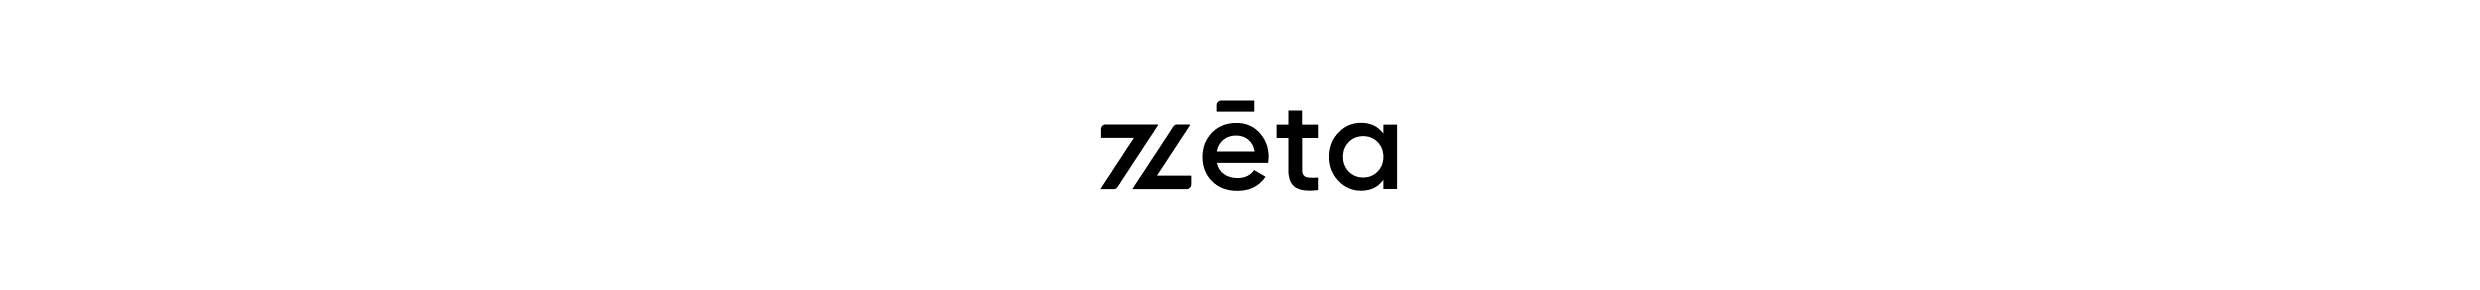 ZETA SHOES logo